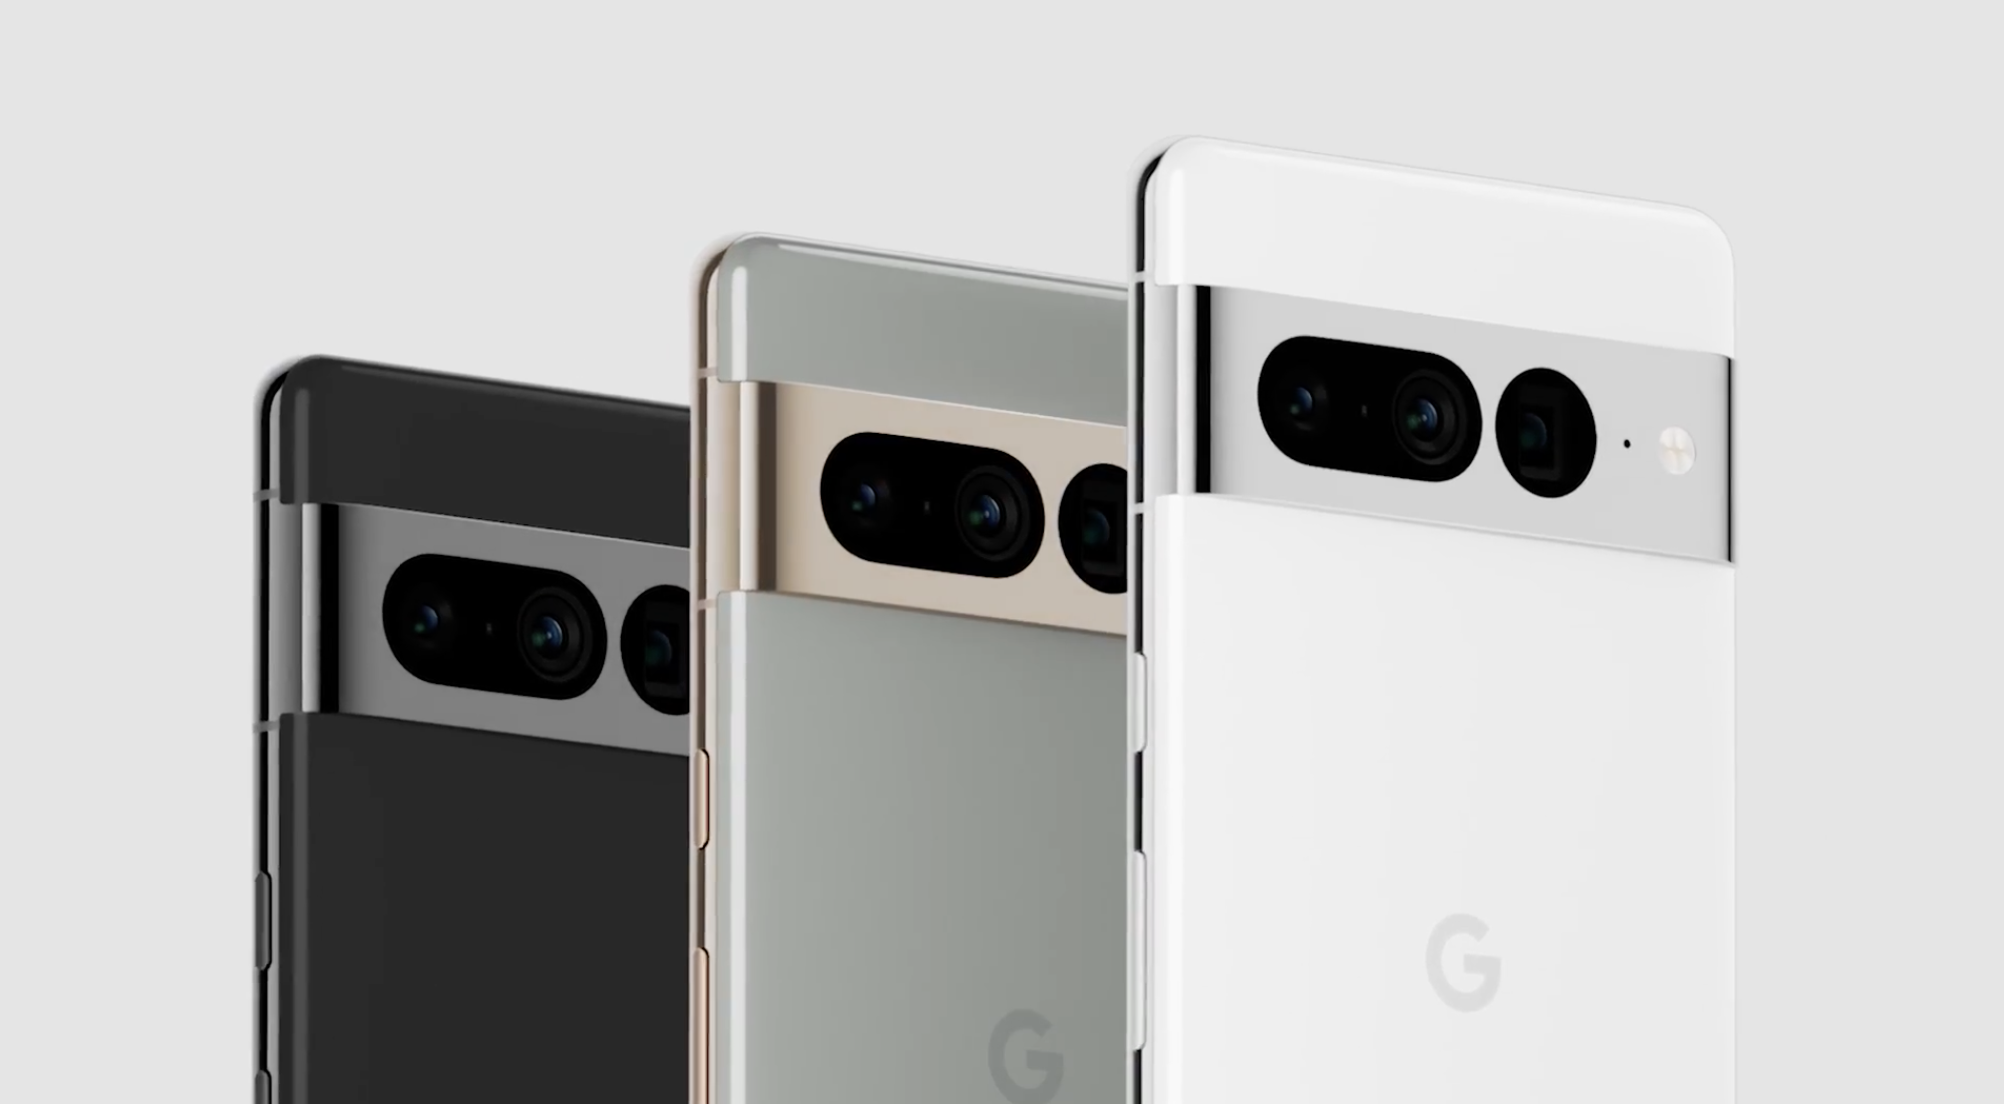 Pixel 7 phones